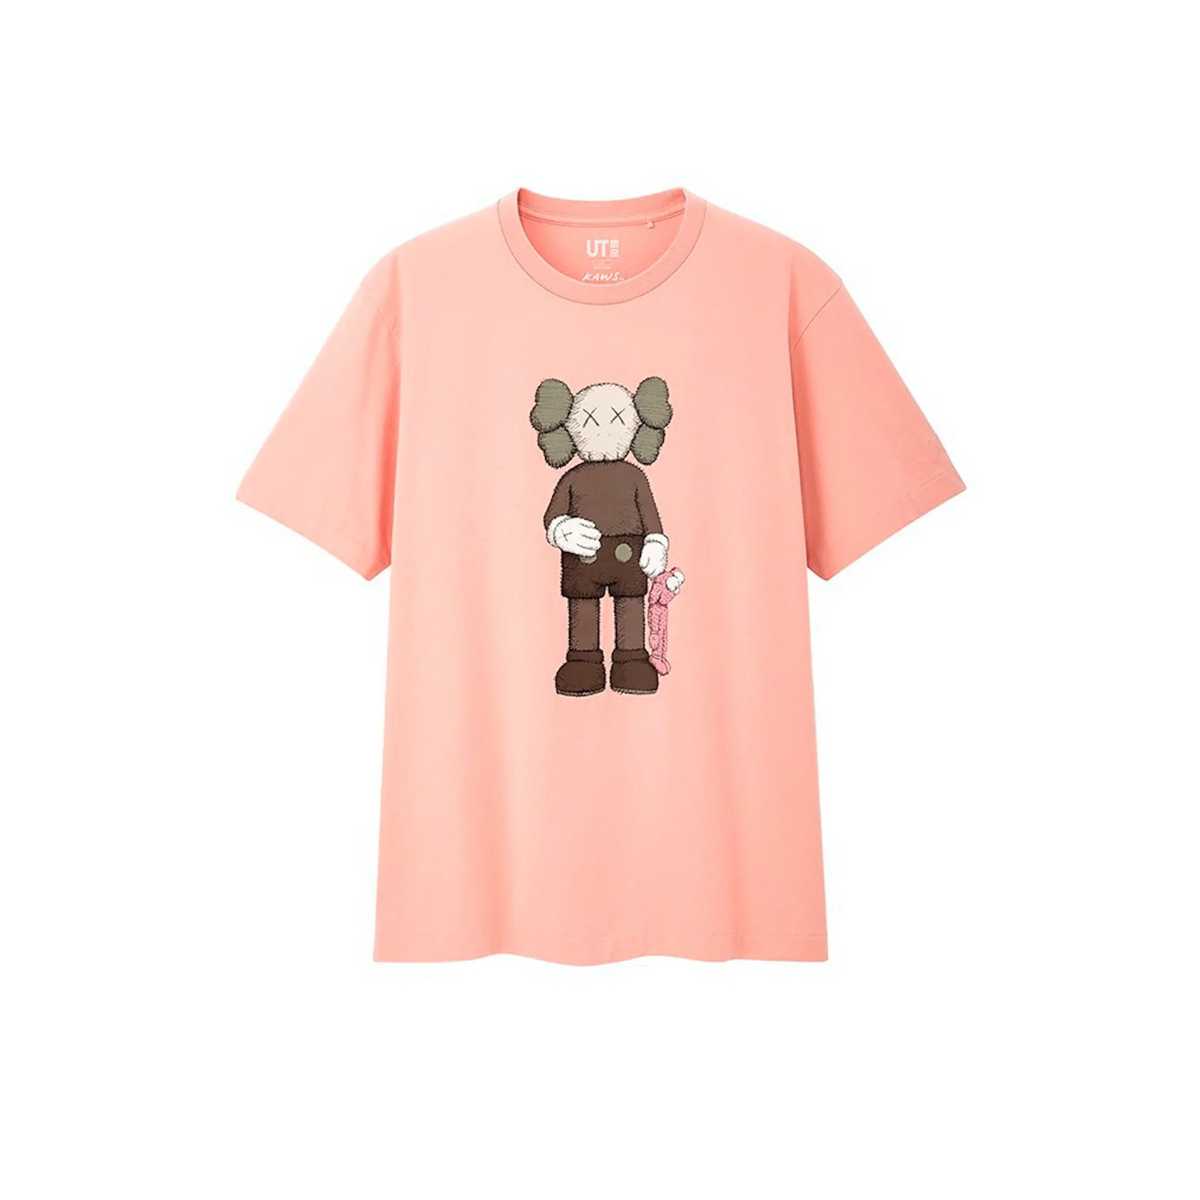 KAWS x Uniqlo Companion T-shirt "Pink"